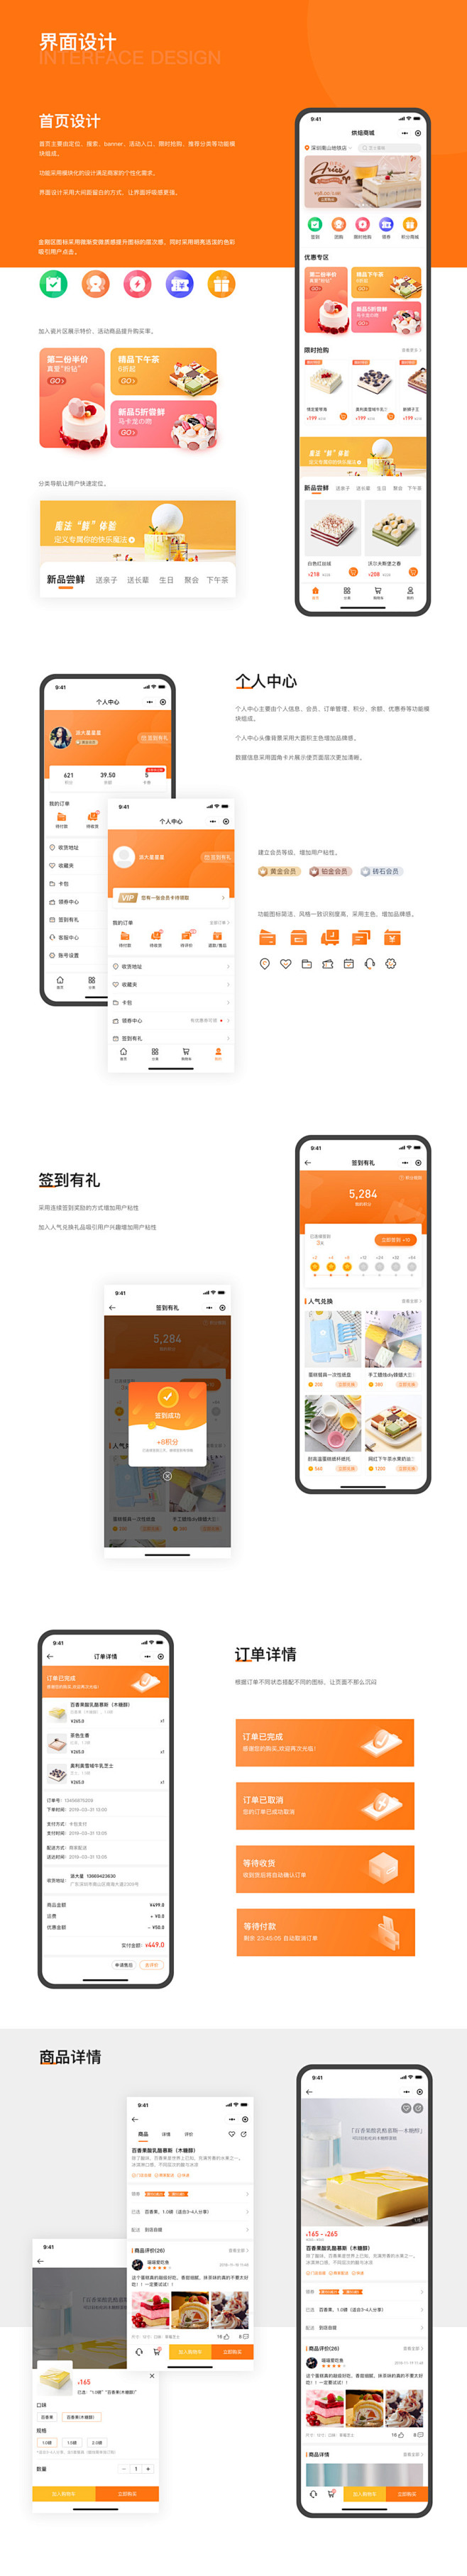 烘焙商城小程序-UI中国用户体验设计平台